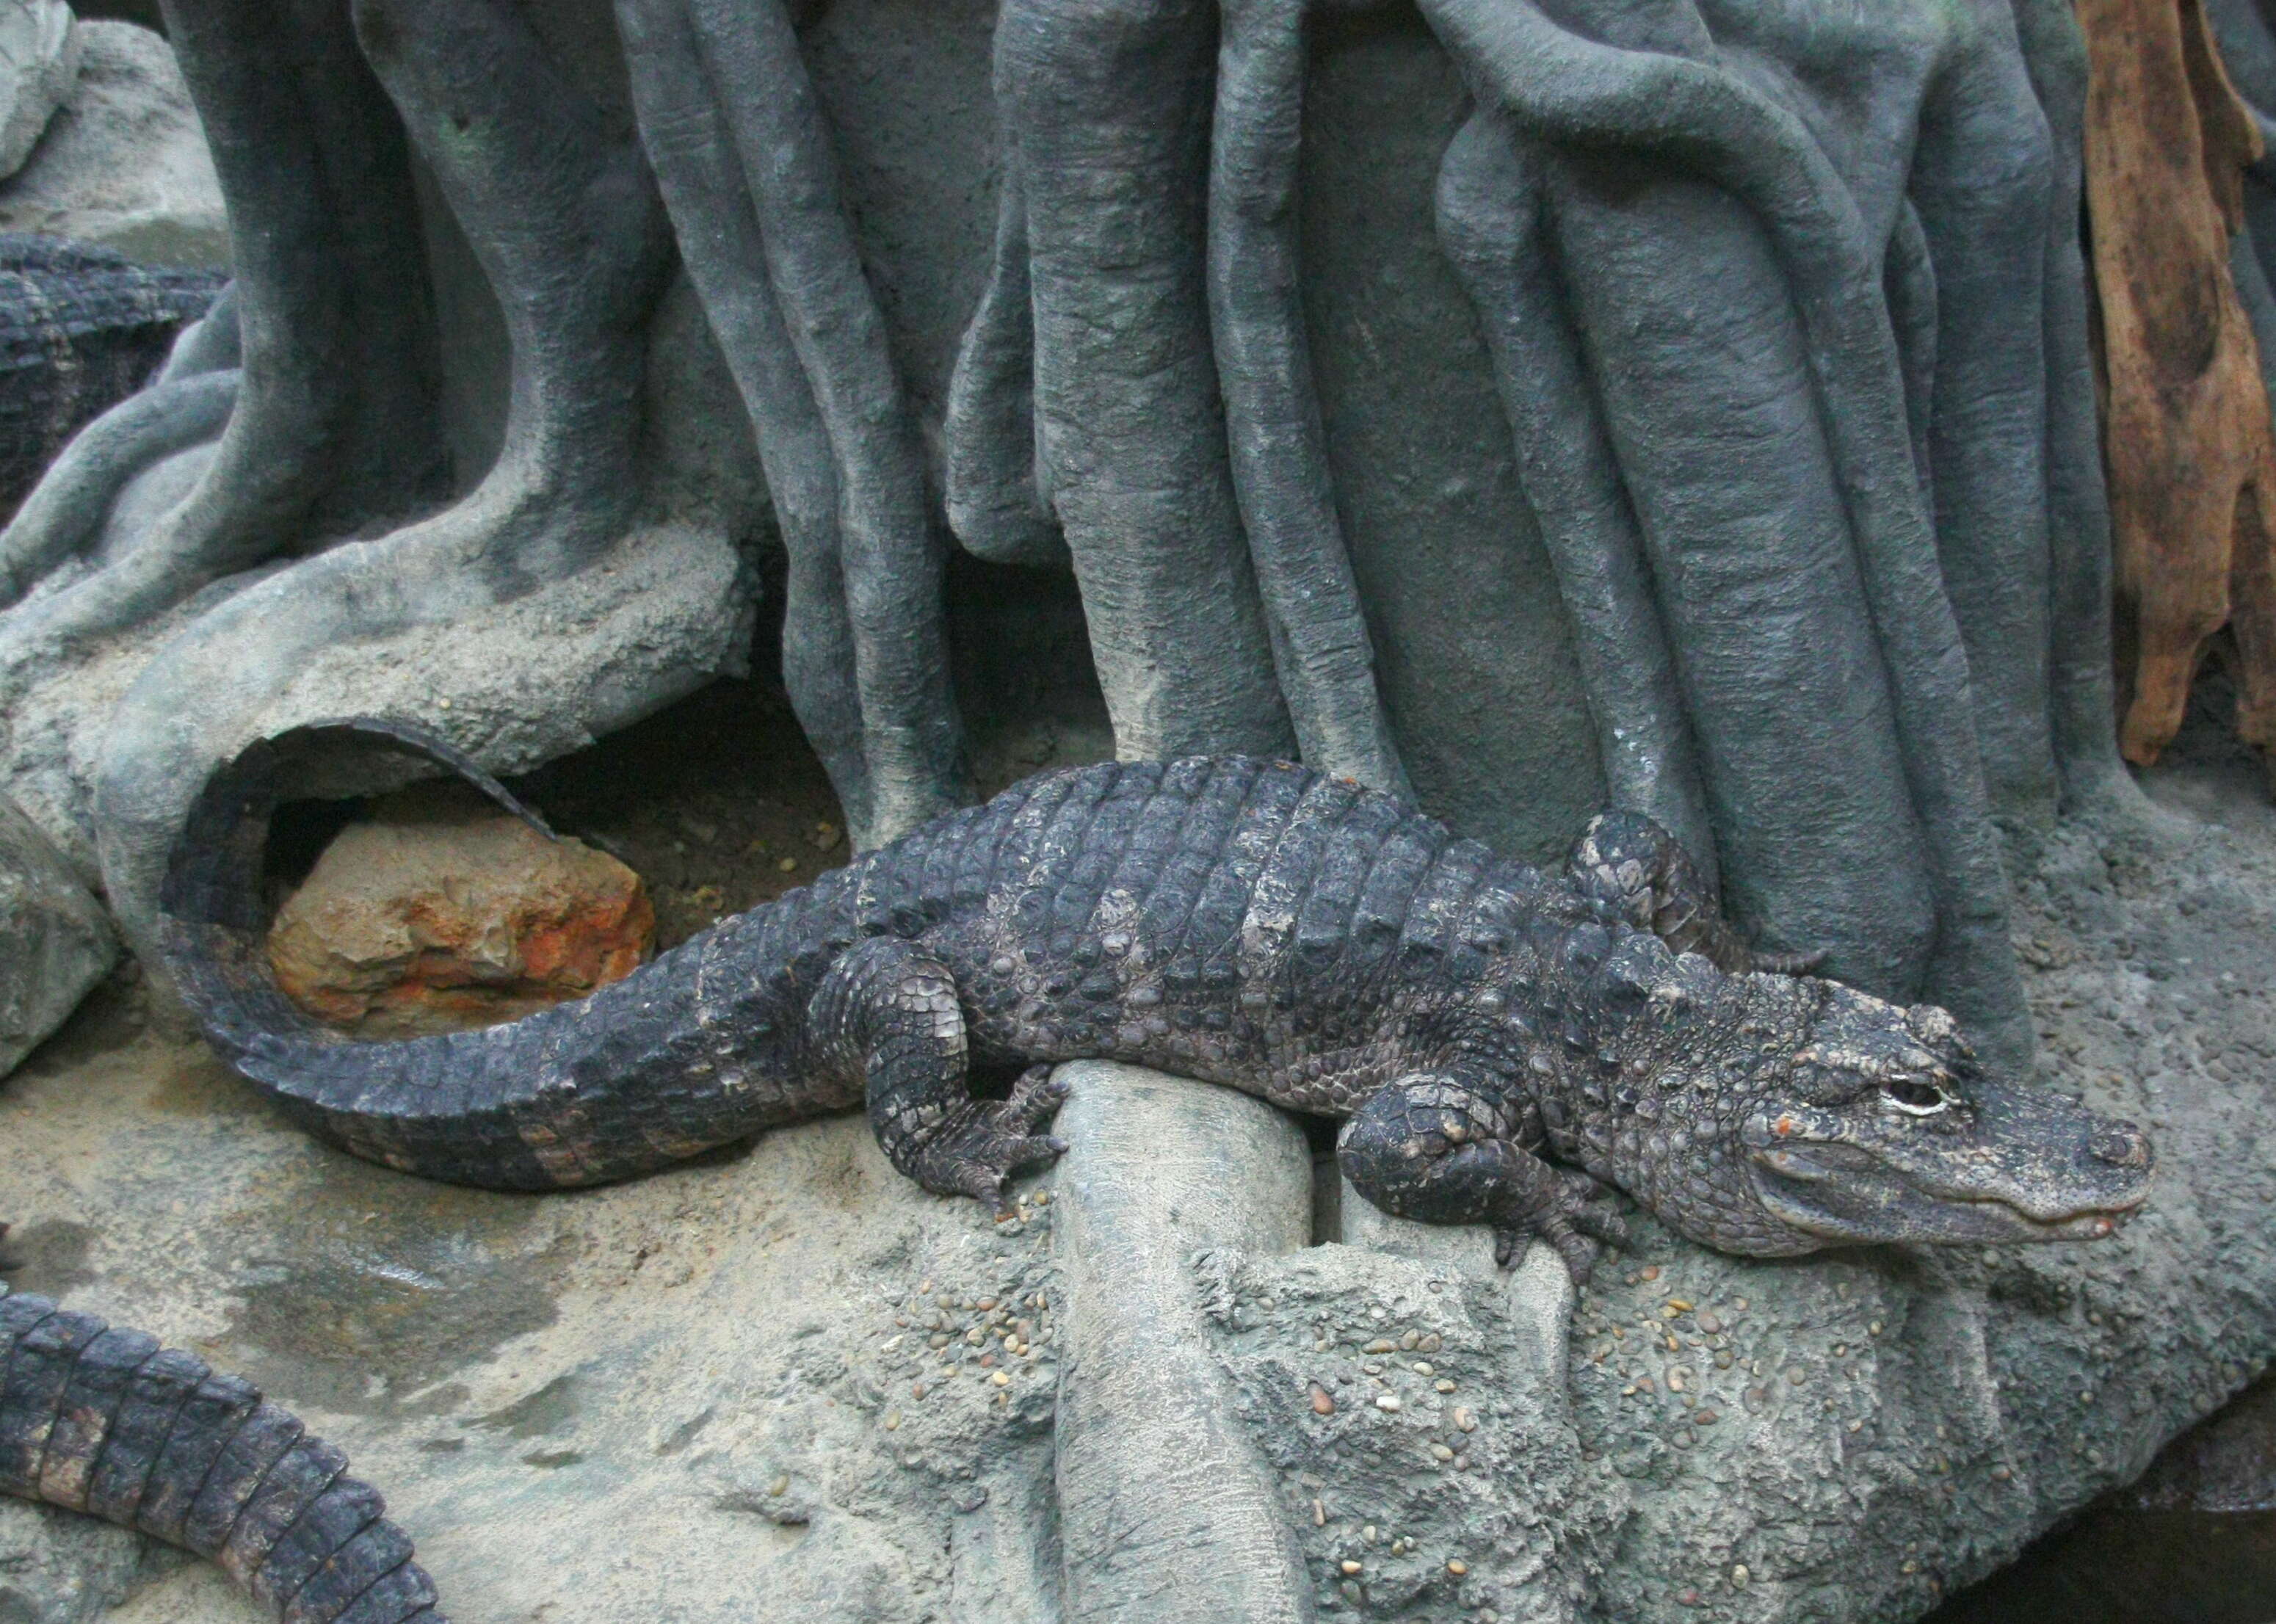 Image of Chinese alligator